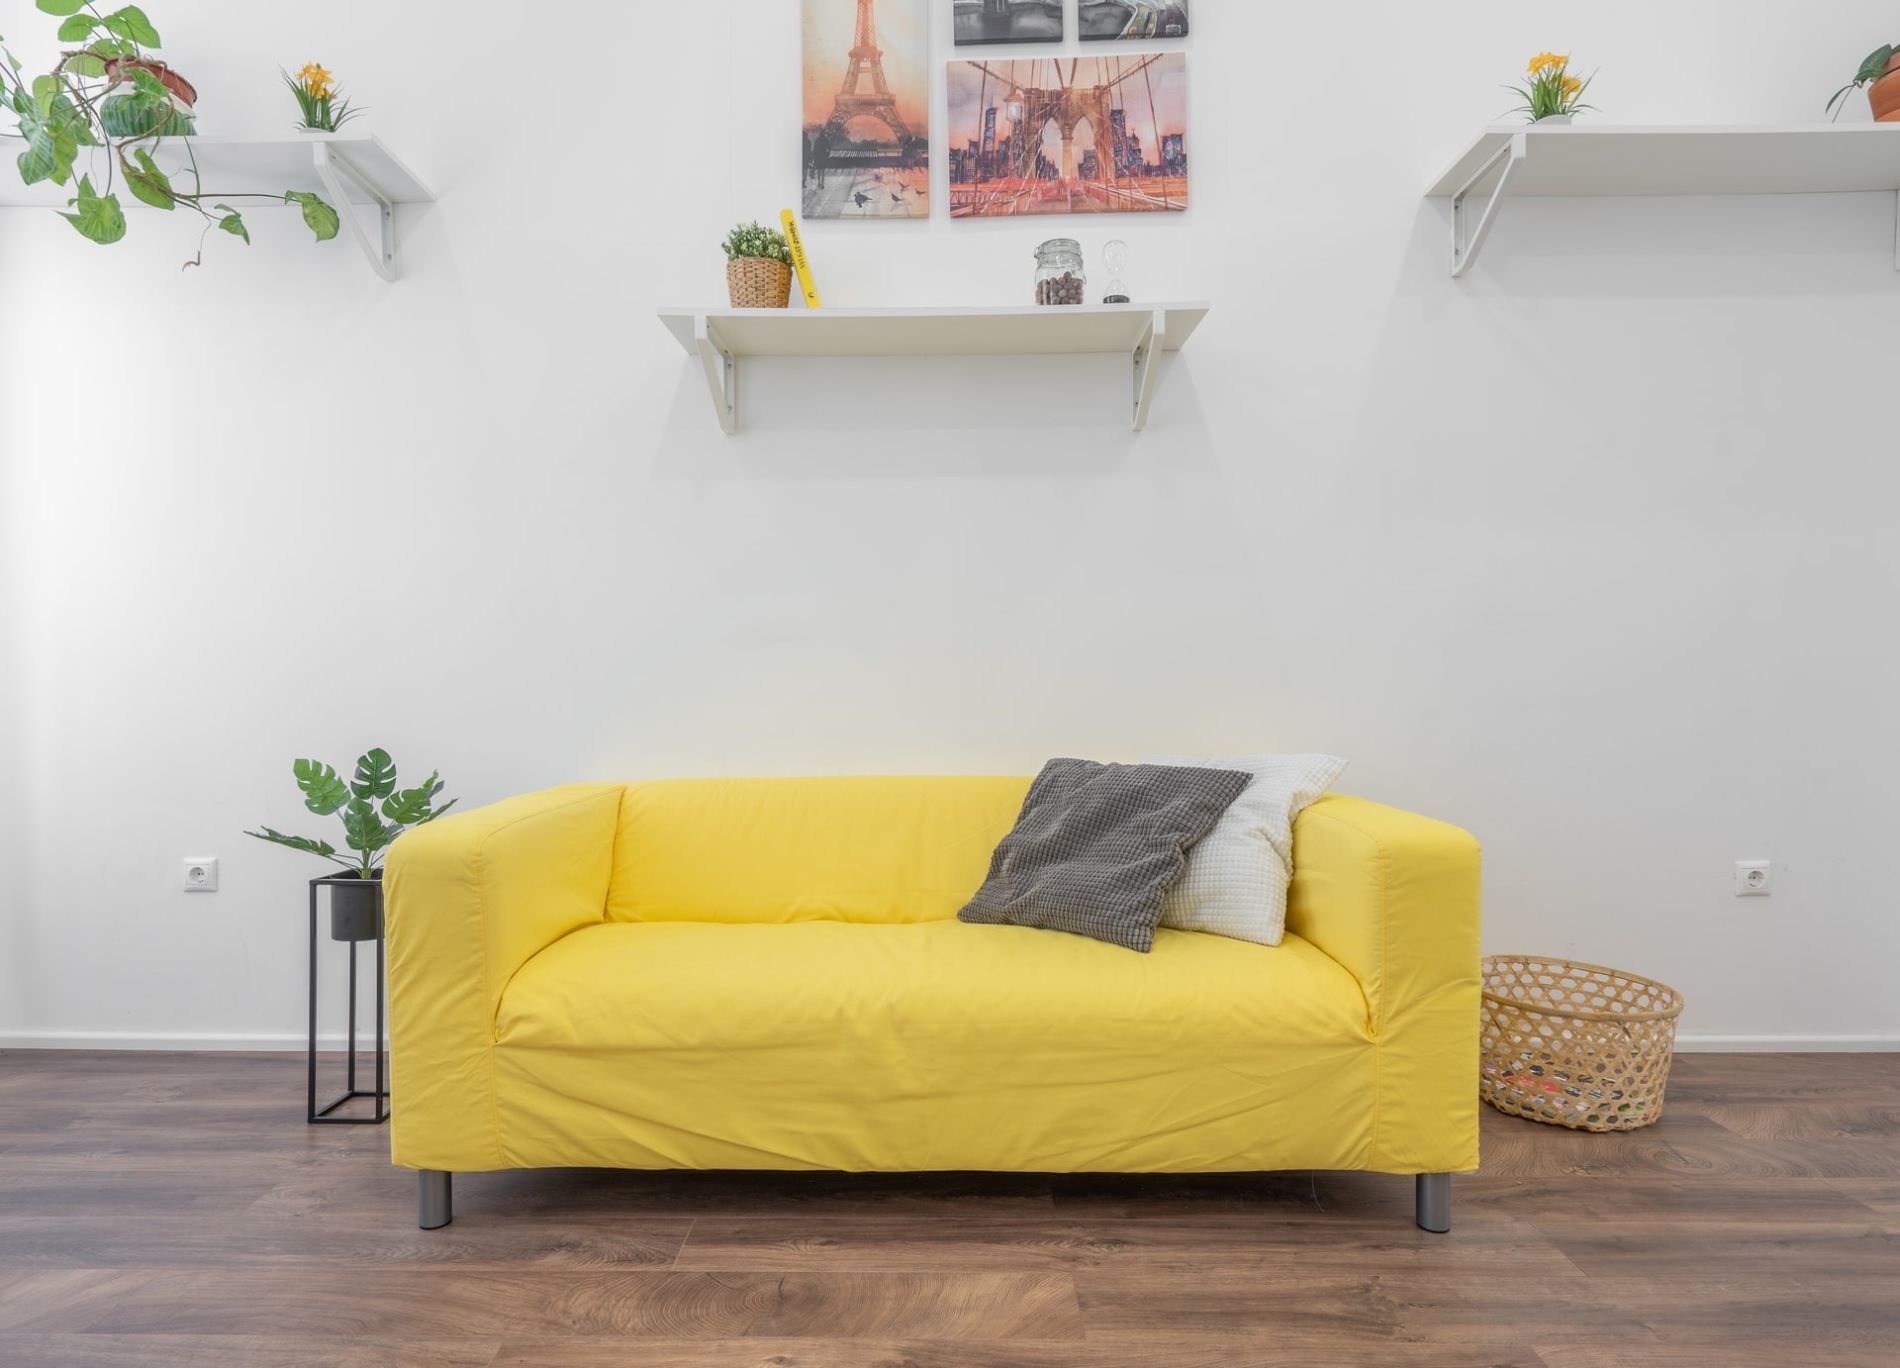 Fehler beim Wohnzimmer einrichten kleines Sofa kahle Wand - 9 ½ häufige Einrichtungsfehler im Wohnzimmer